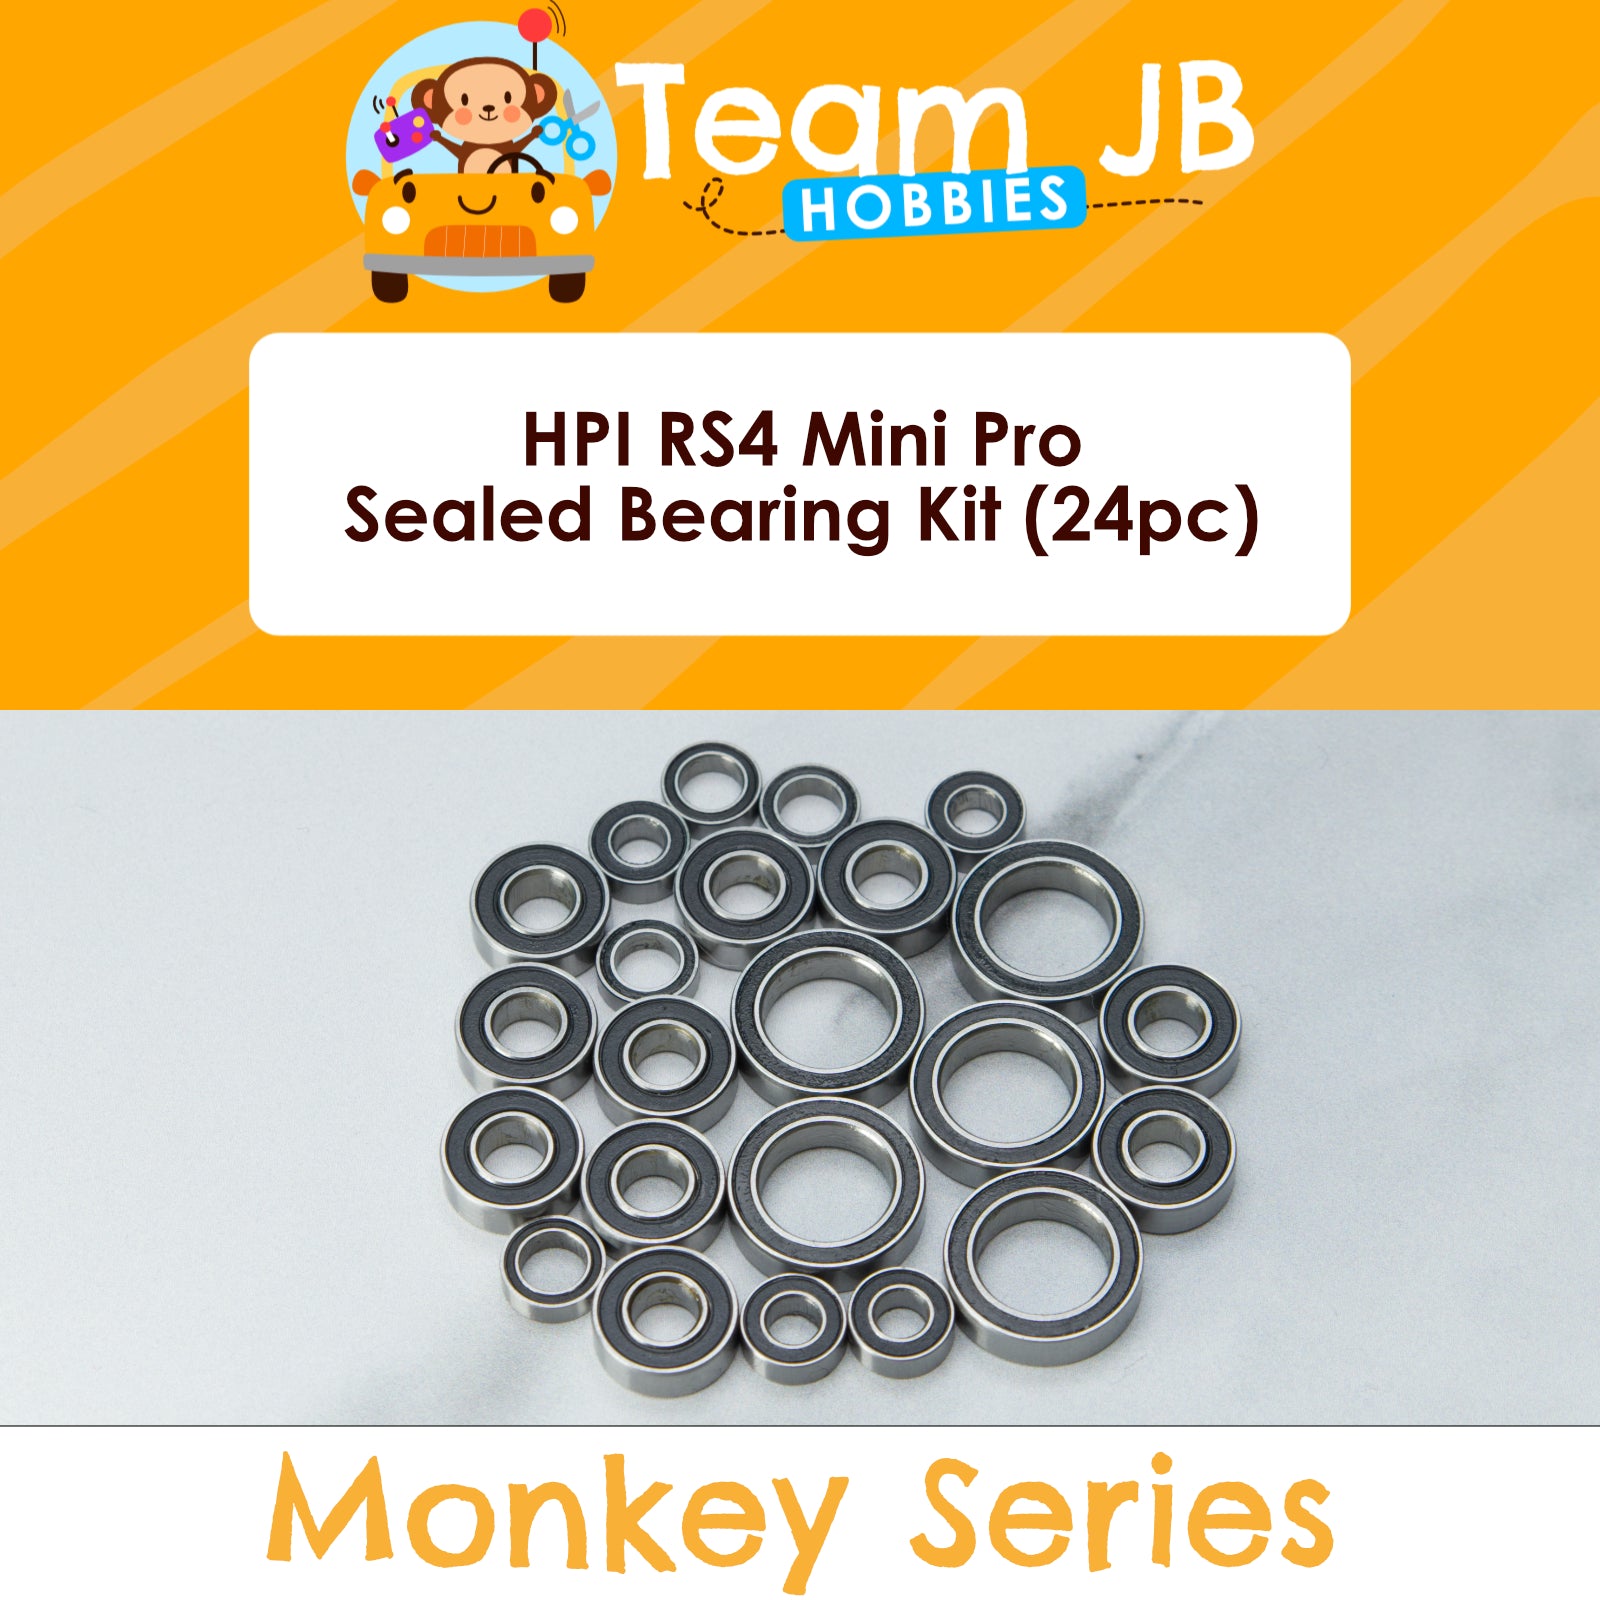 HPI RS4 Mini Pro - Sealed Bearing Kit